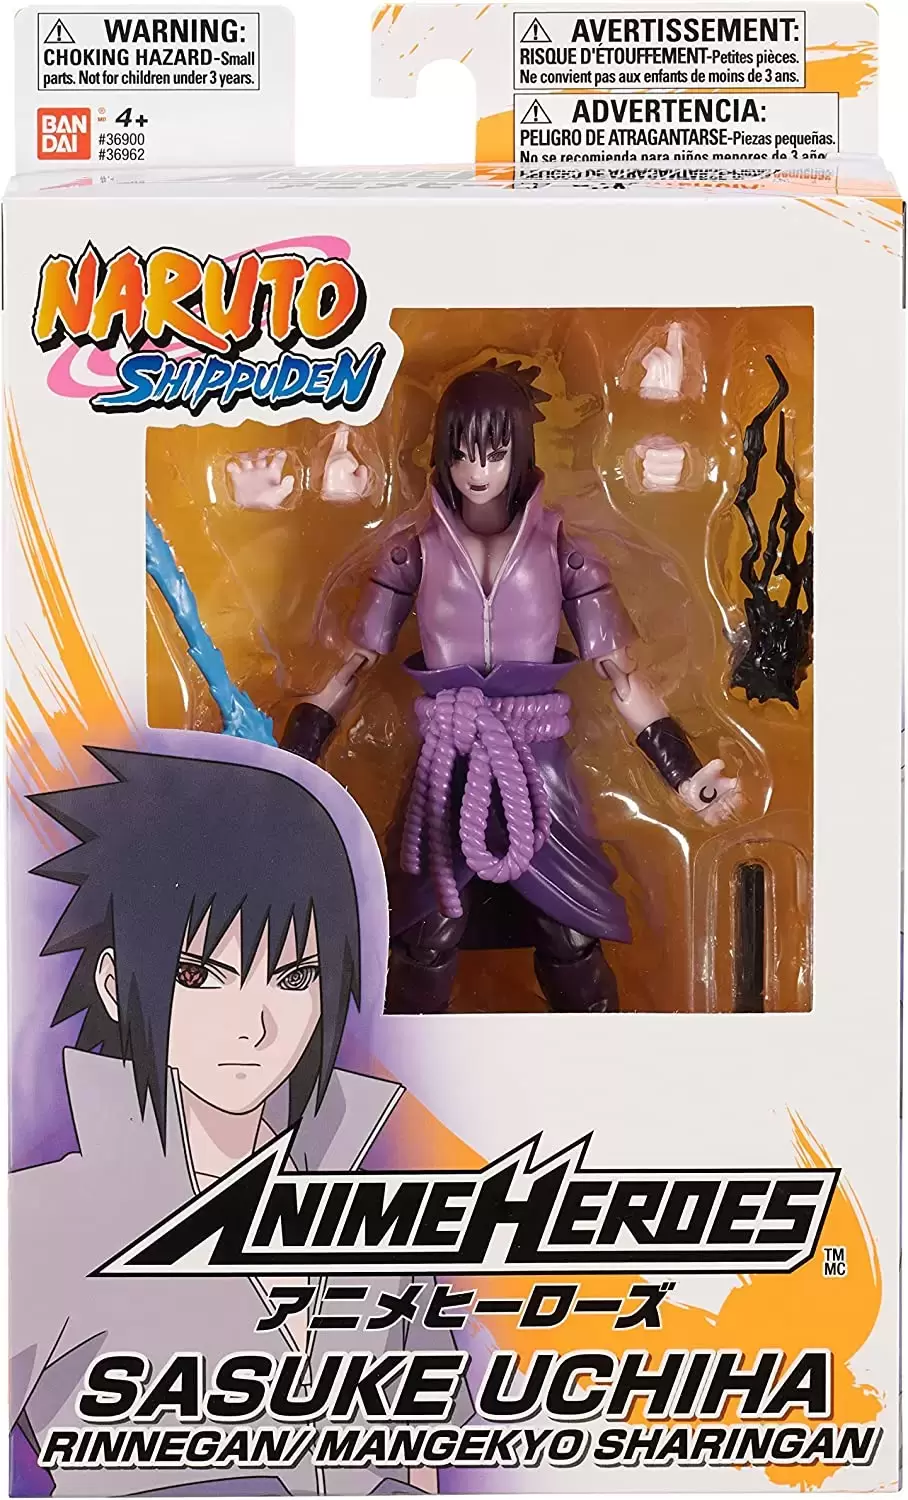 Naruto Shippuden - Uchiha Sasuke Rinnegan / Mangekyo Sharingan - figurine  Anime Heroes - Bandai